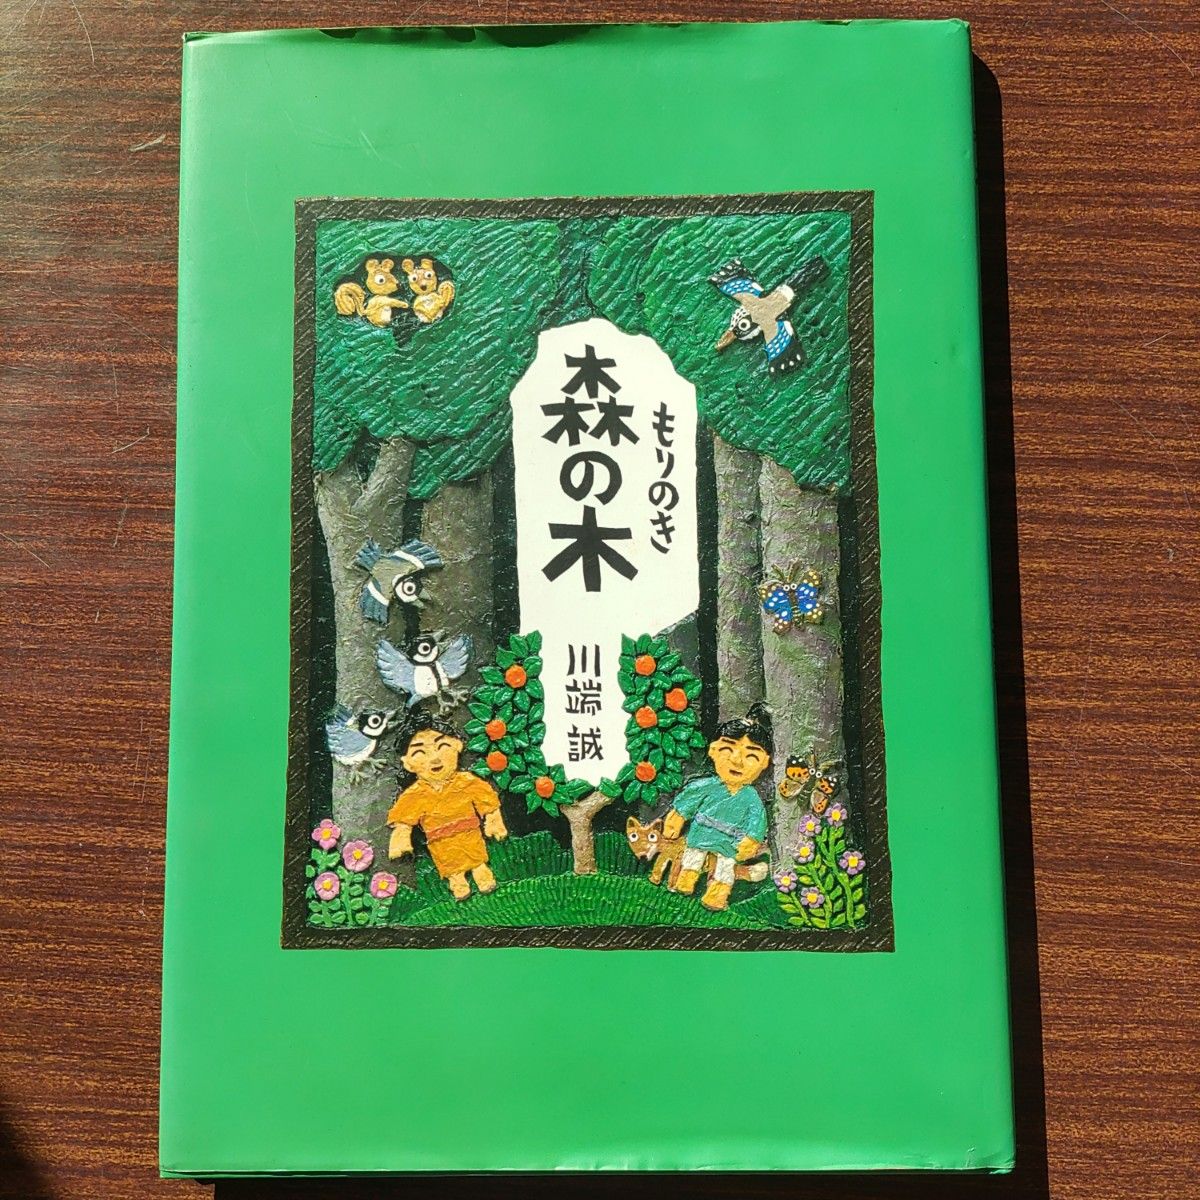 川端誠絵本『森の木』